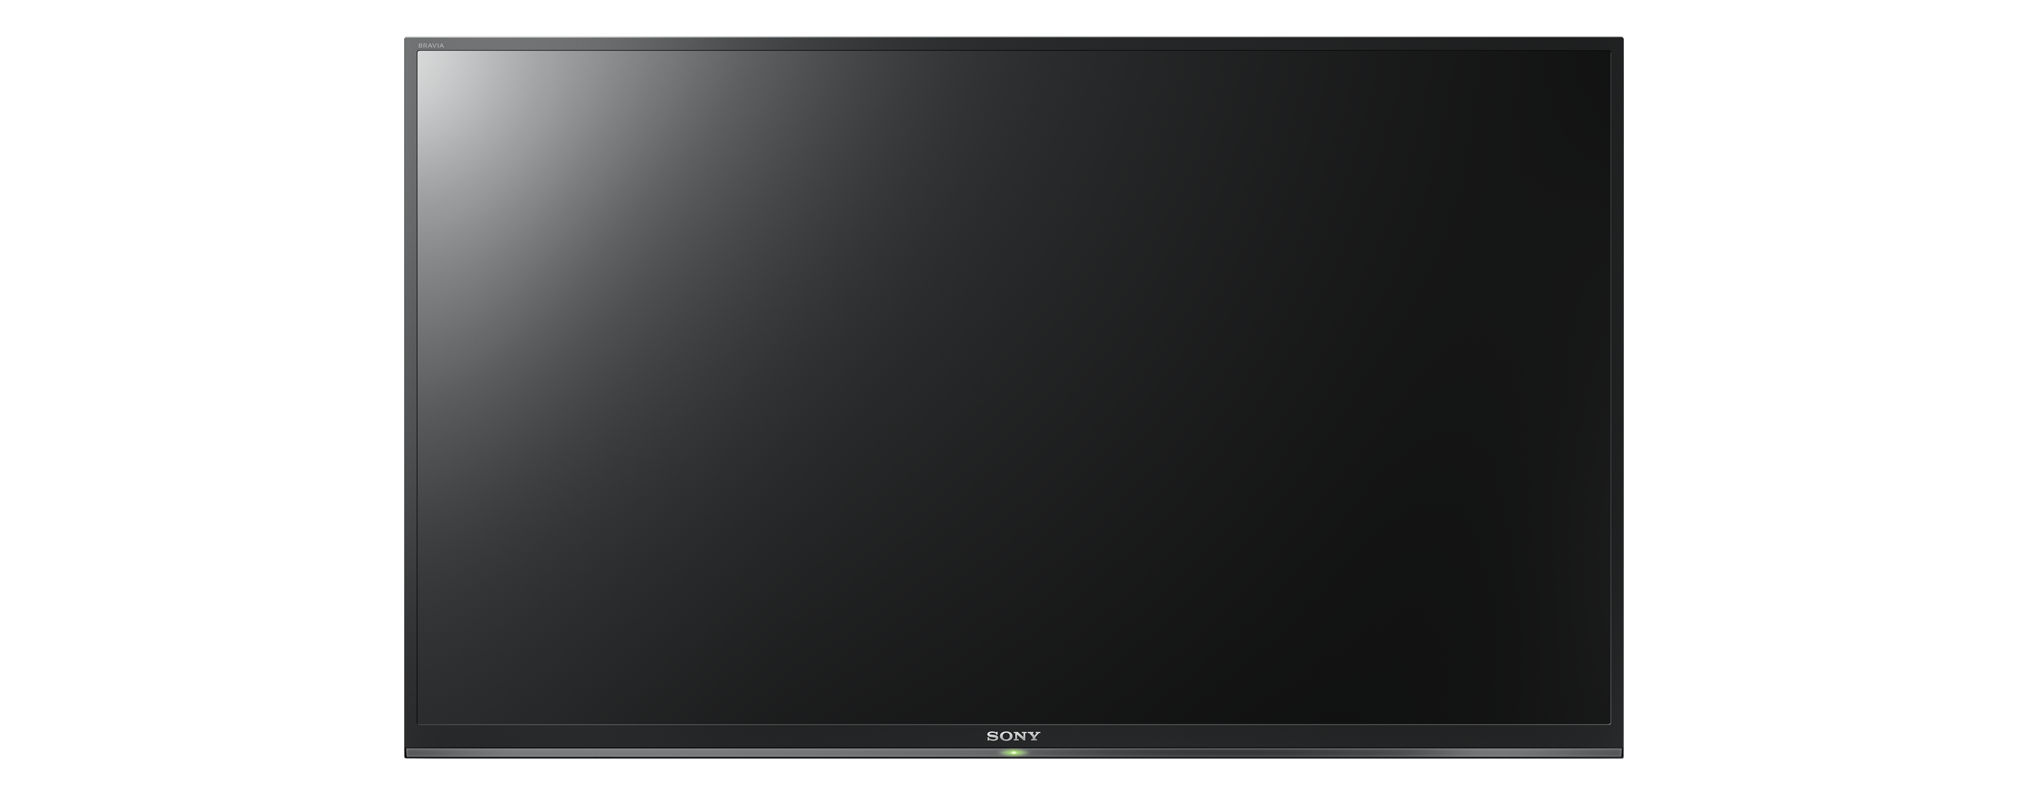 SONY KDL-32W6605 LED cm, Linux) HD-ready, 32 80 Zoll SMART TV, (Flat, / TV